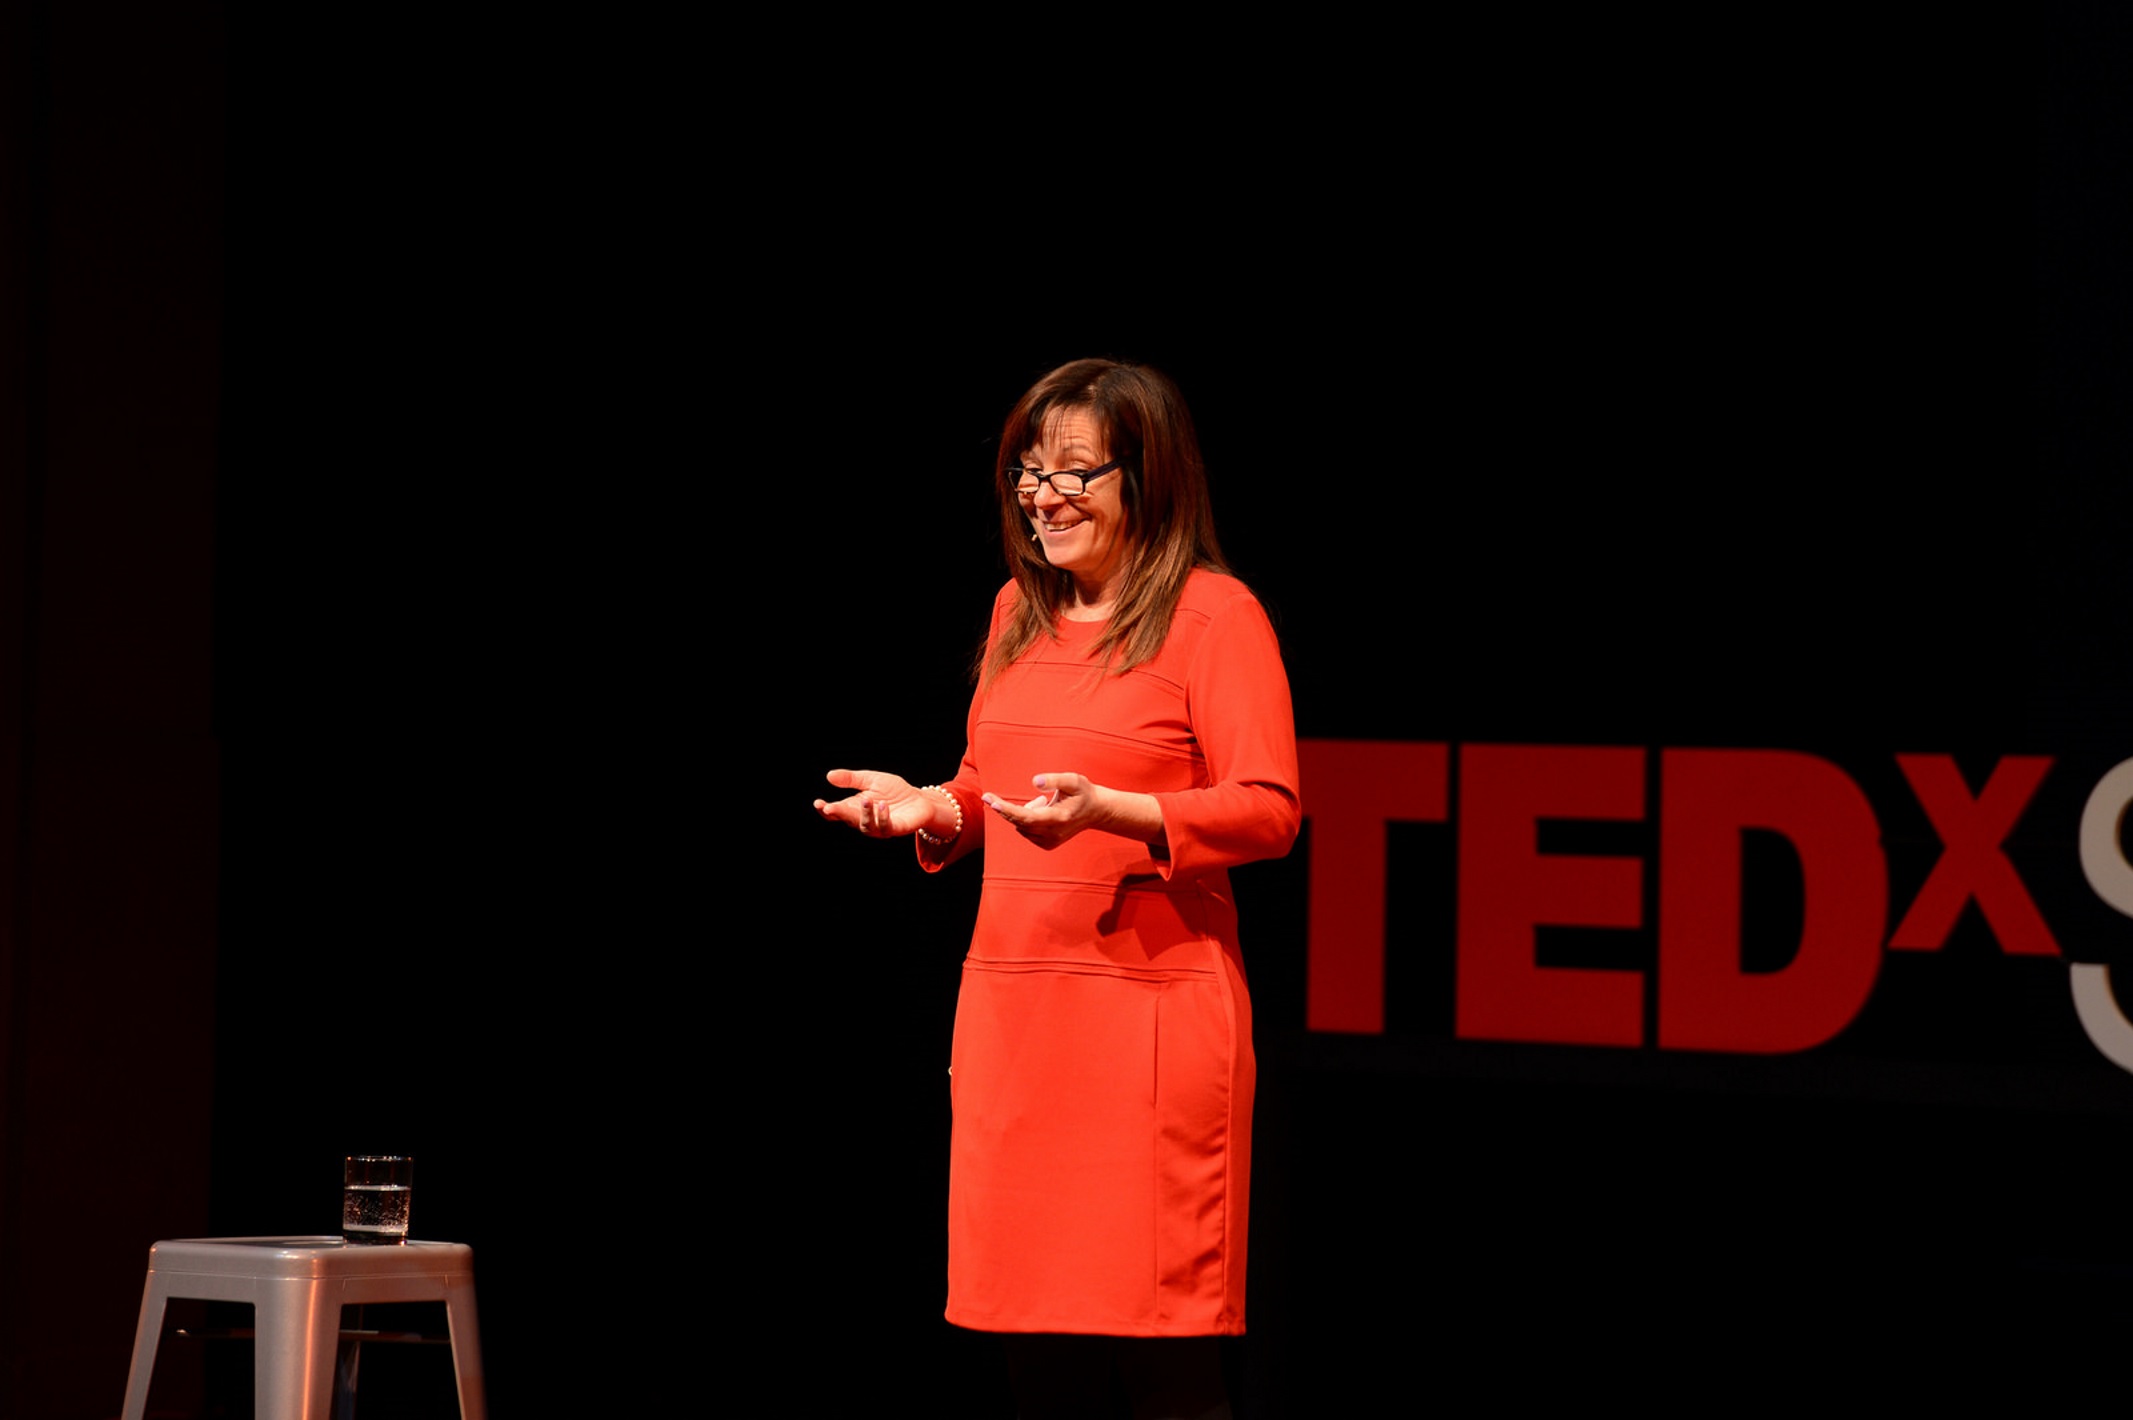 Sarri speaking at TEDx event